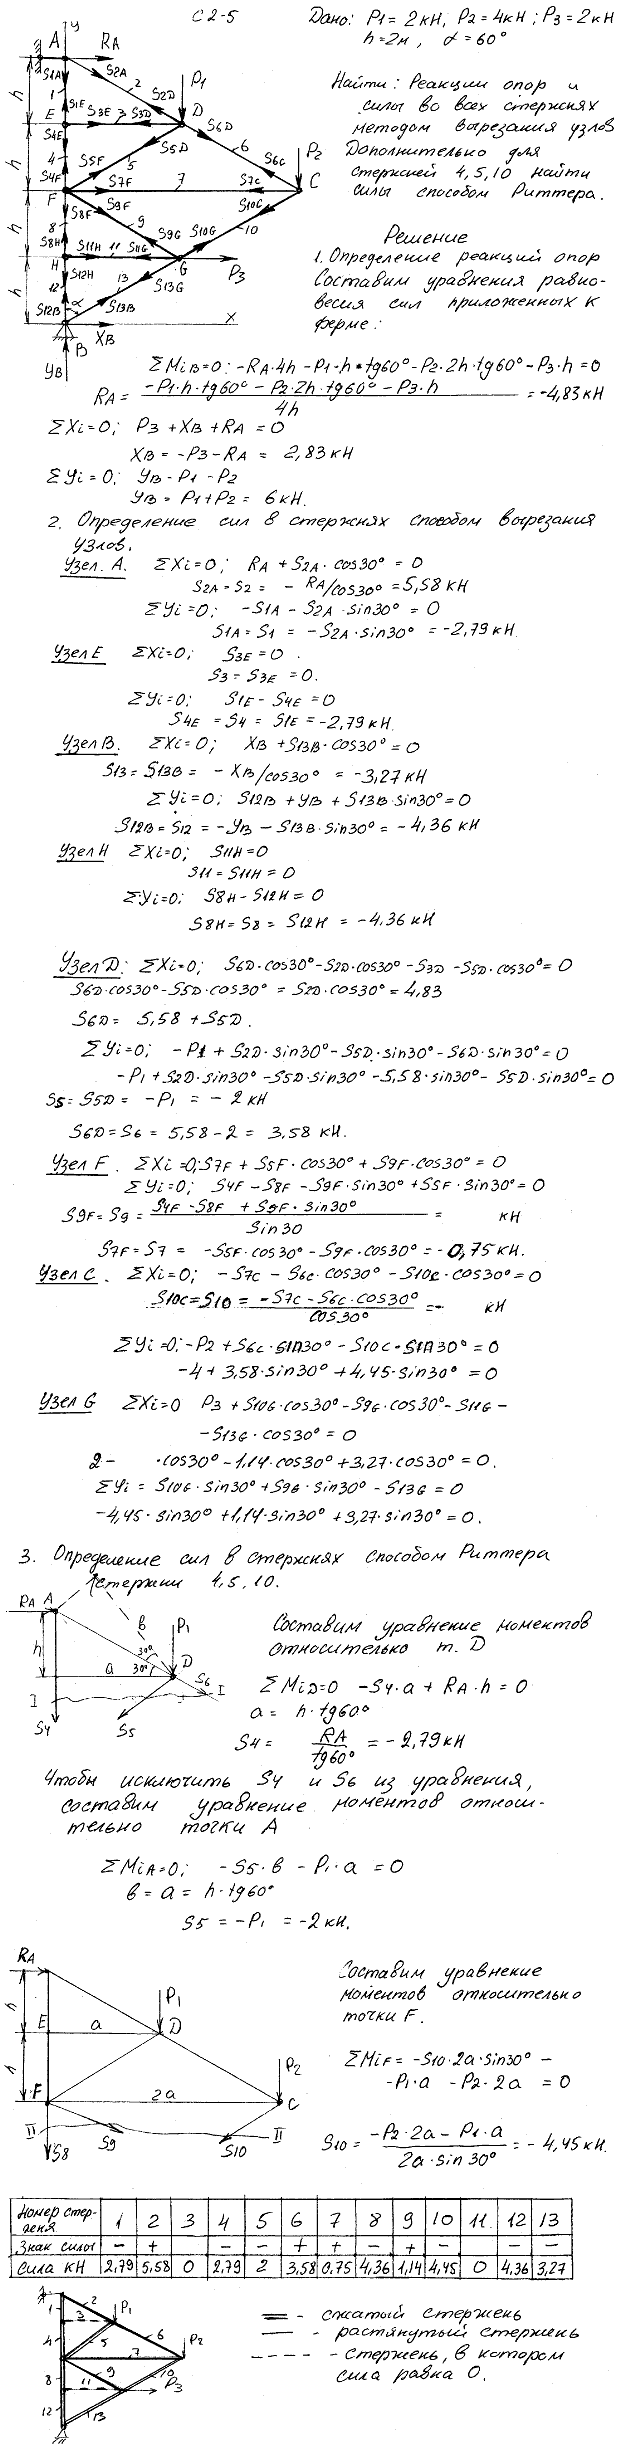 Задание C2 вариант 5. P1=2 кН, P2=4 кН, P3=2 кН, h=2 м, α=60 град, номер стержня 4, 5, 10.